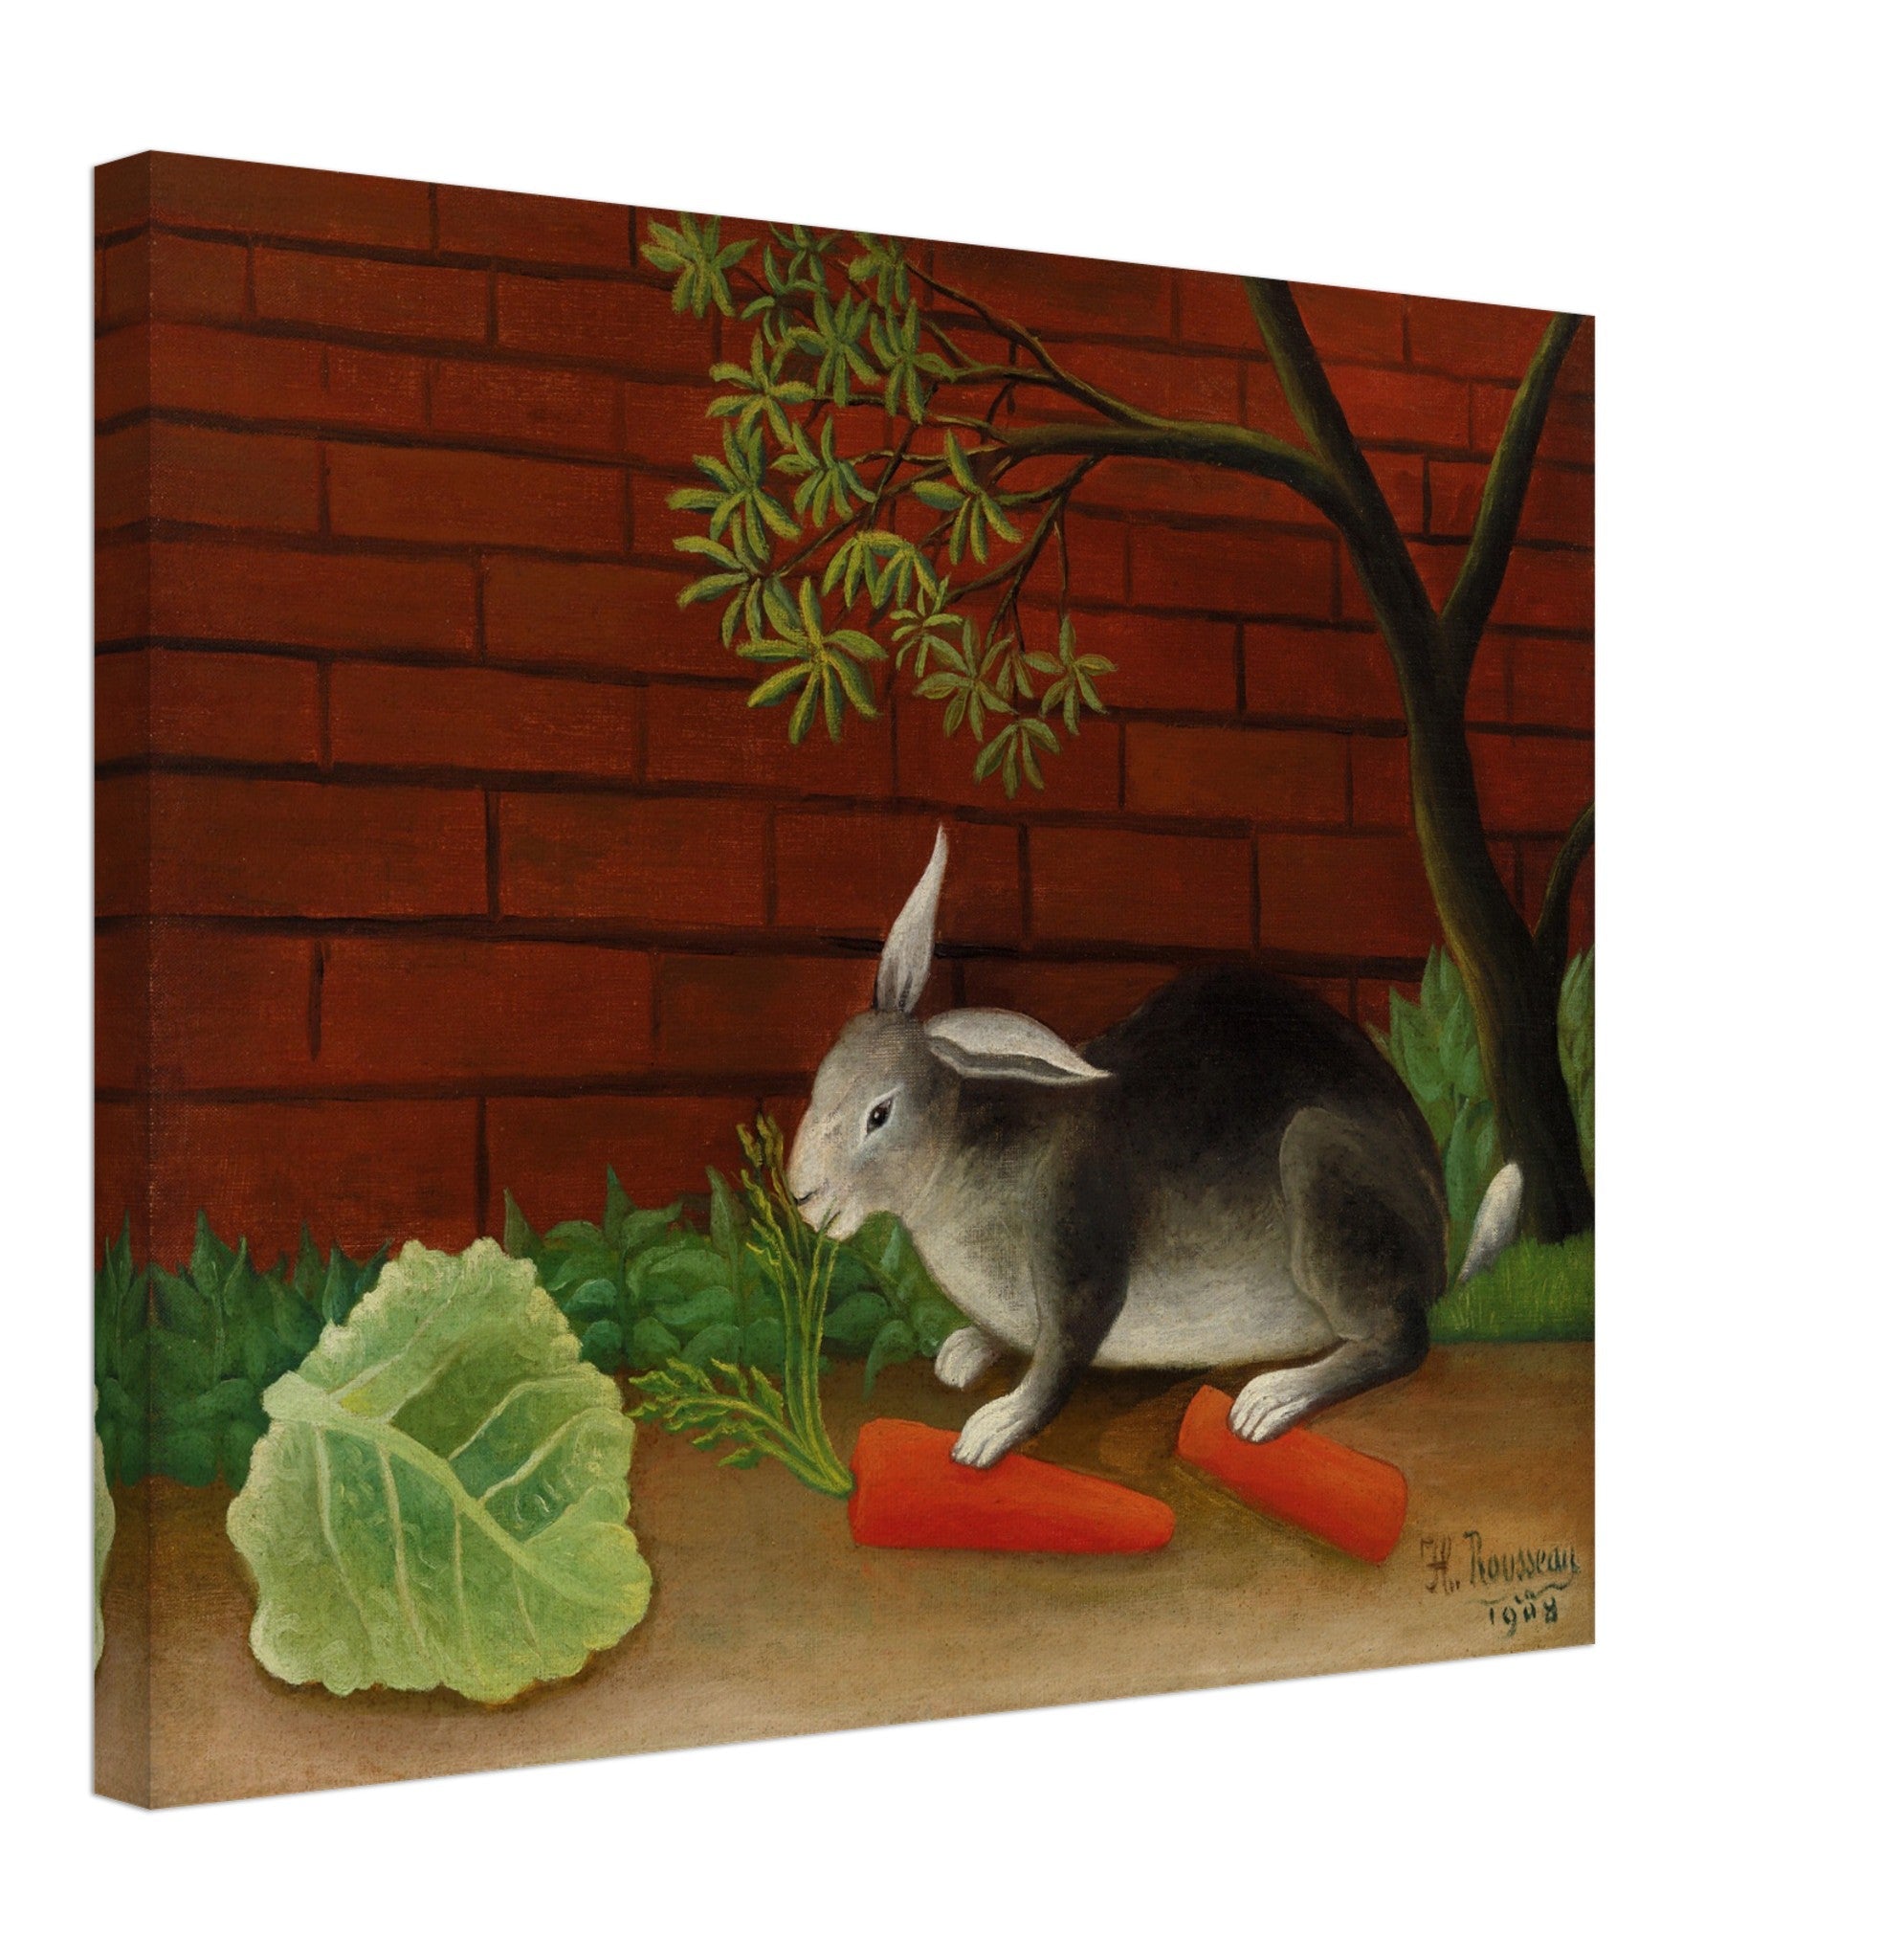 Vintage Rabbit Canvas Henri Rousseau Canvas Print The Rabbits Meal, Le Repas Du Lapin Canvas Print 1908 - WallArtPrints4U